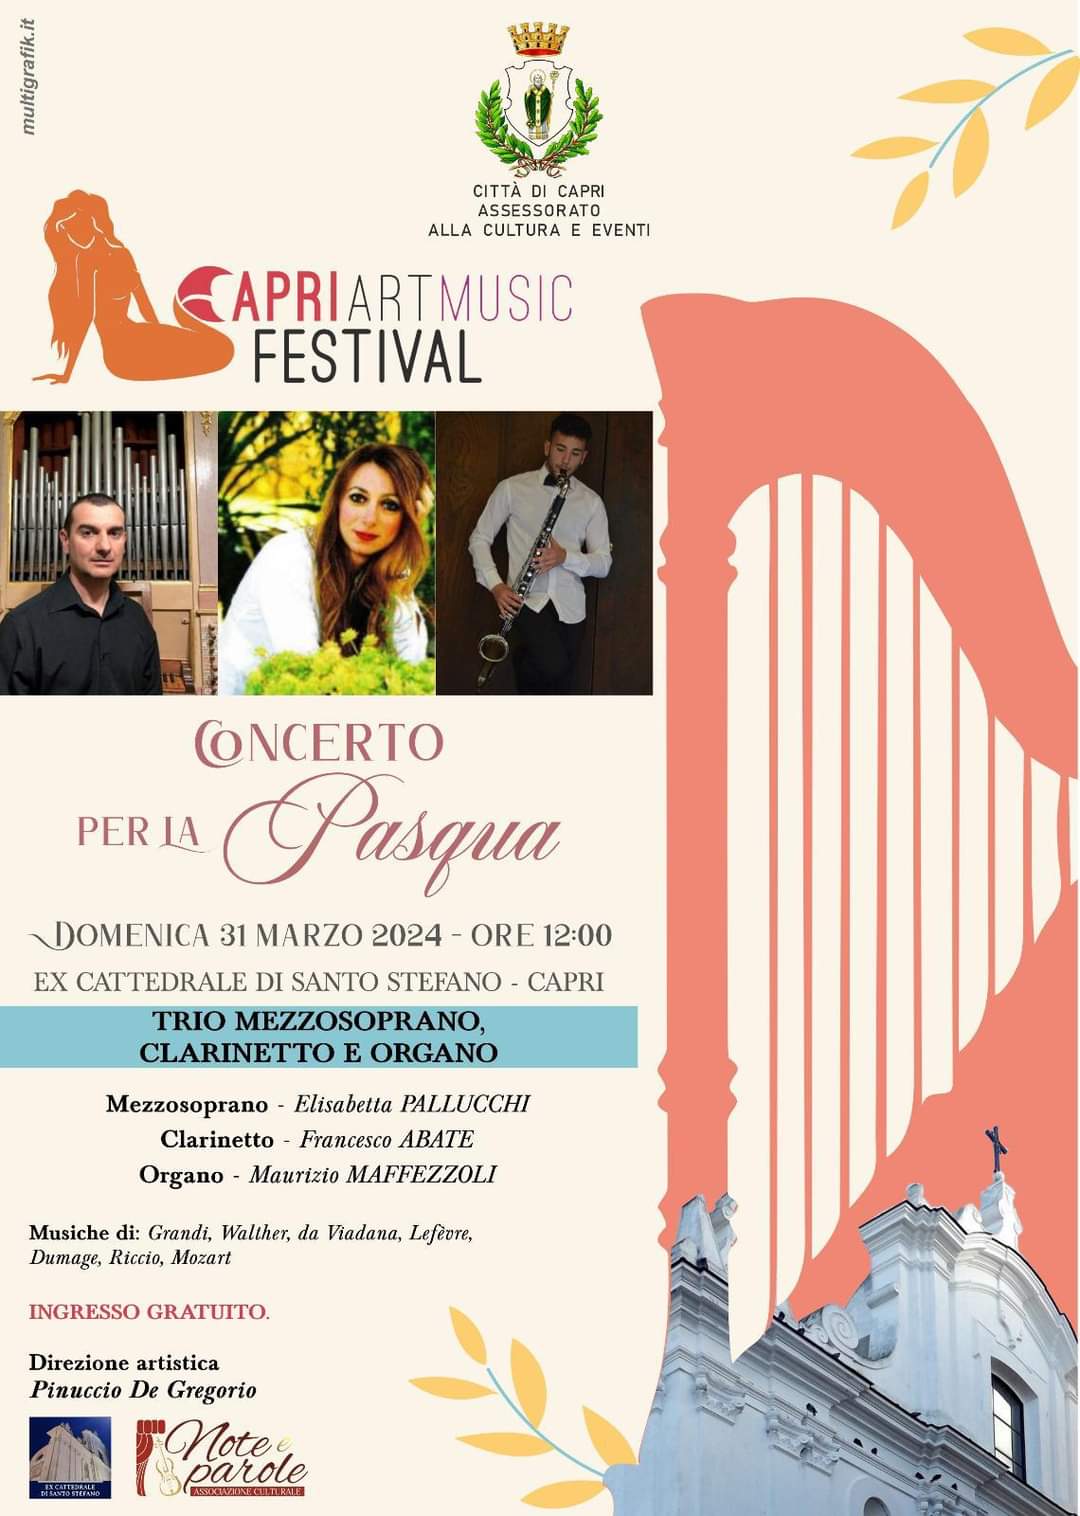 Pasqua: concerto a Capri nella ex cattedrale di Santo Stefano